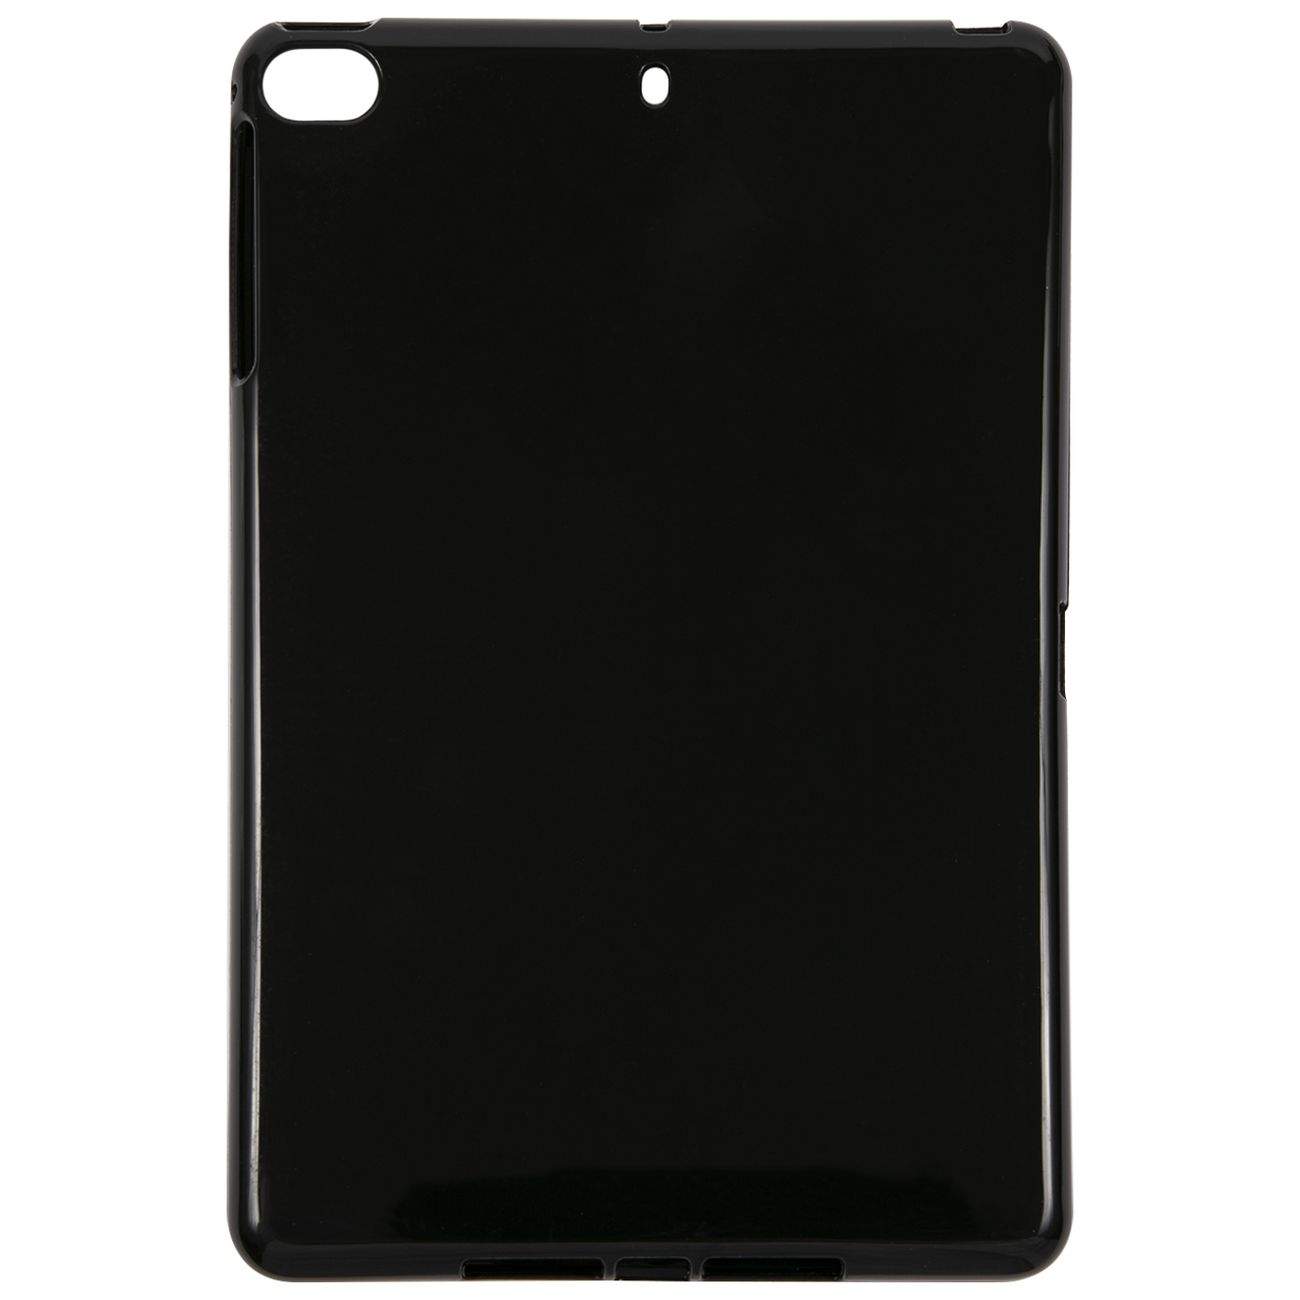 Чехол Red Line для iPad mini 1/2/3/4/5 черный (УТ000026652)